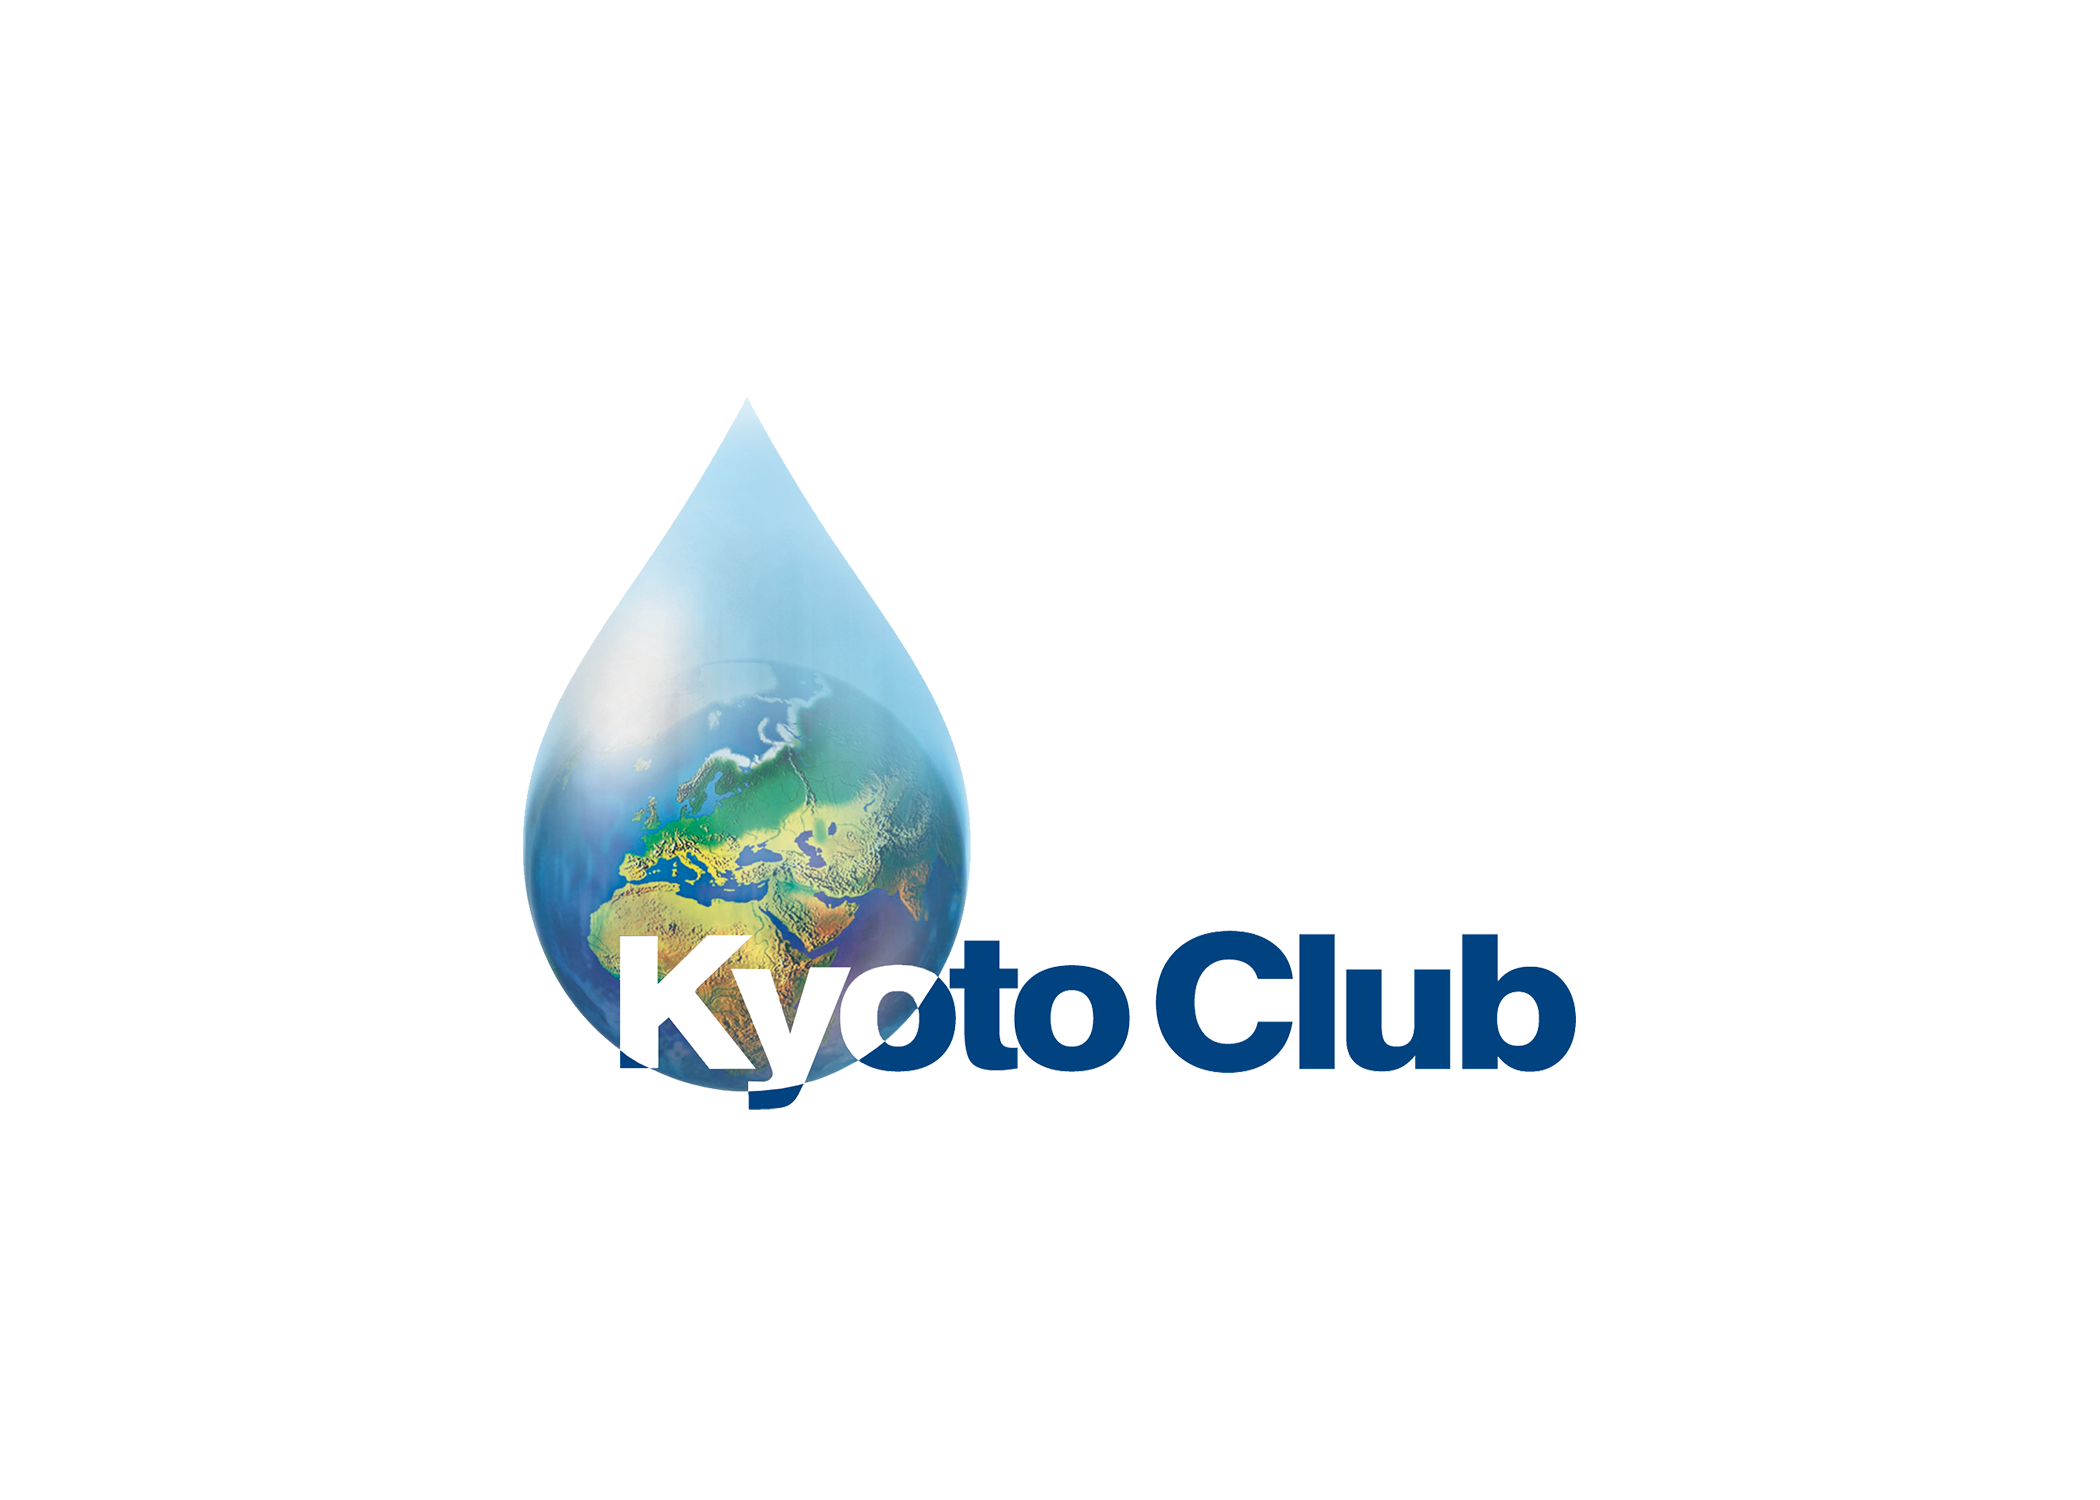 kyoto club logo